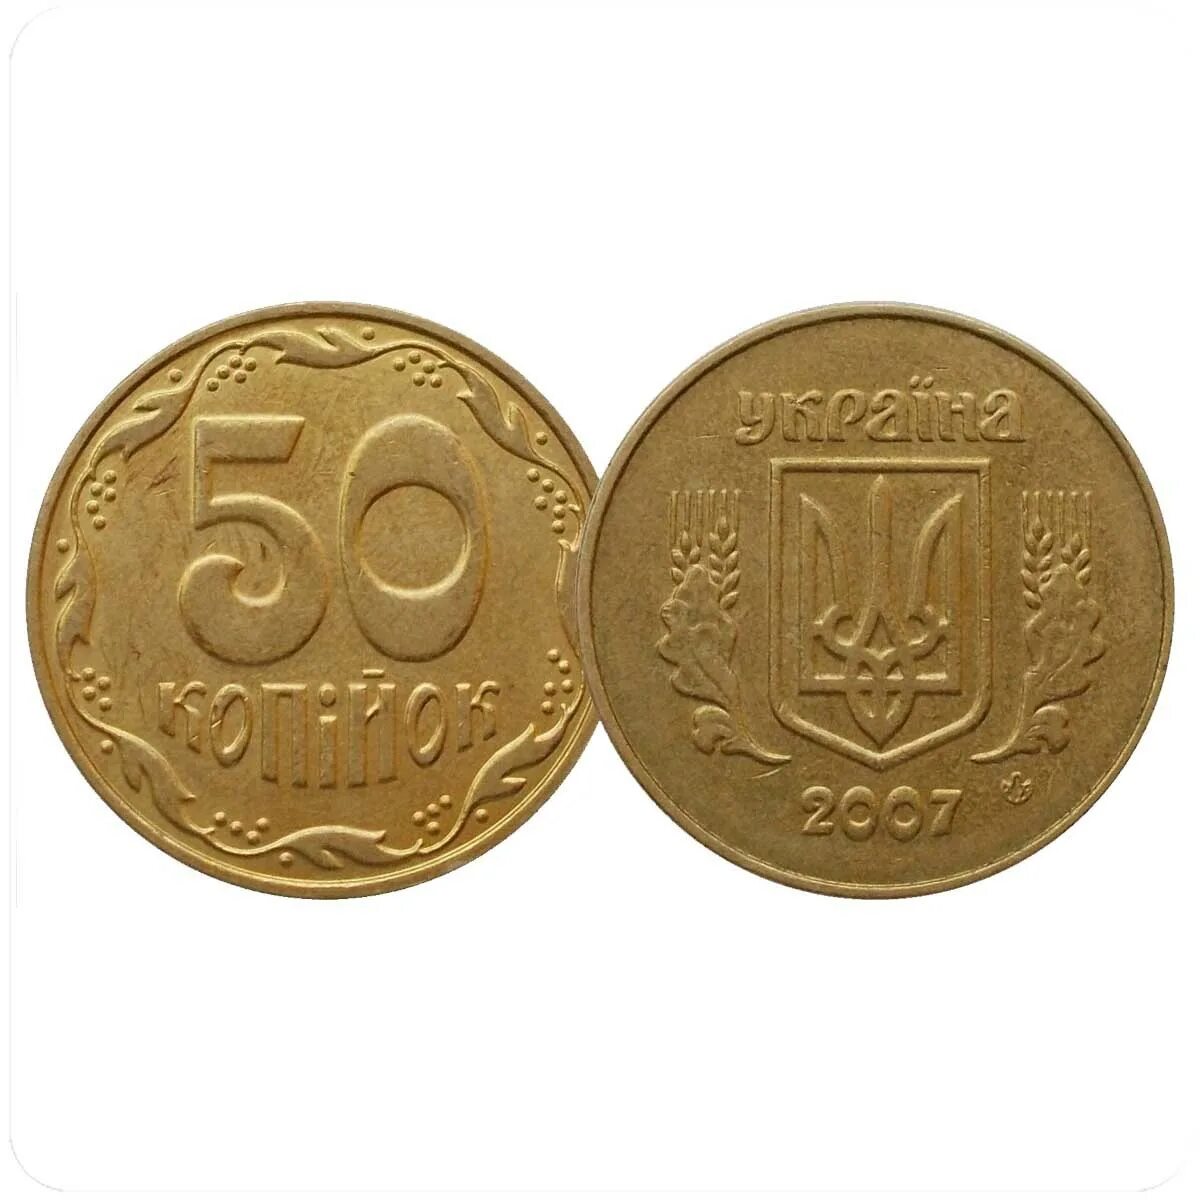 Сколько стоят монеты 2008. 50 Копеек Украина. Могет 2008 ураинская 25 коп. Монета Украины 25 копеек 2008 года. Монета 50 копеек Украина.